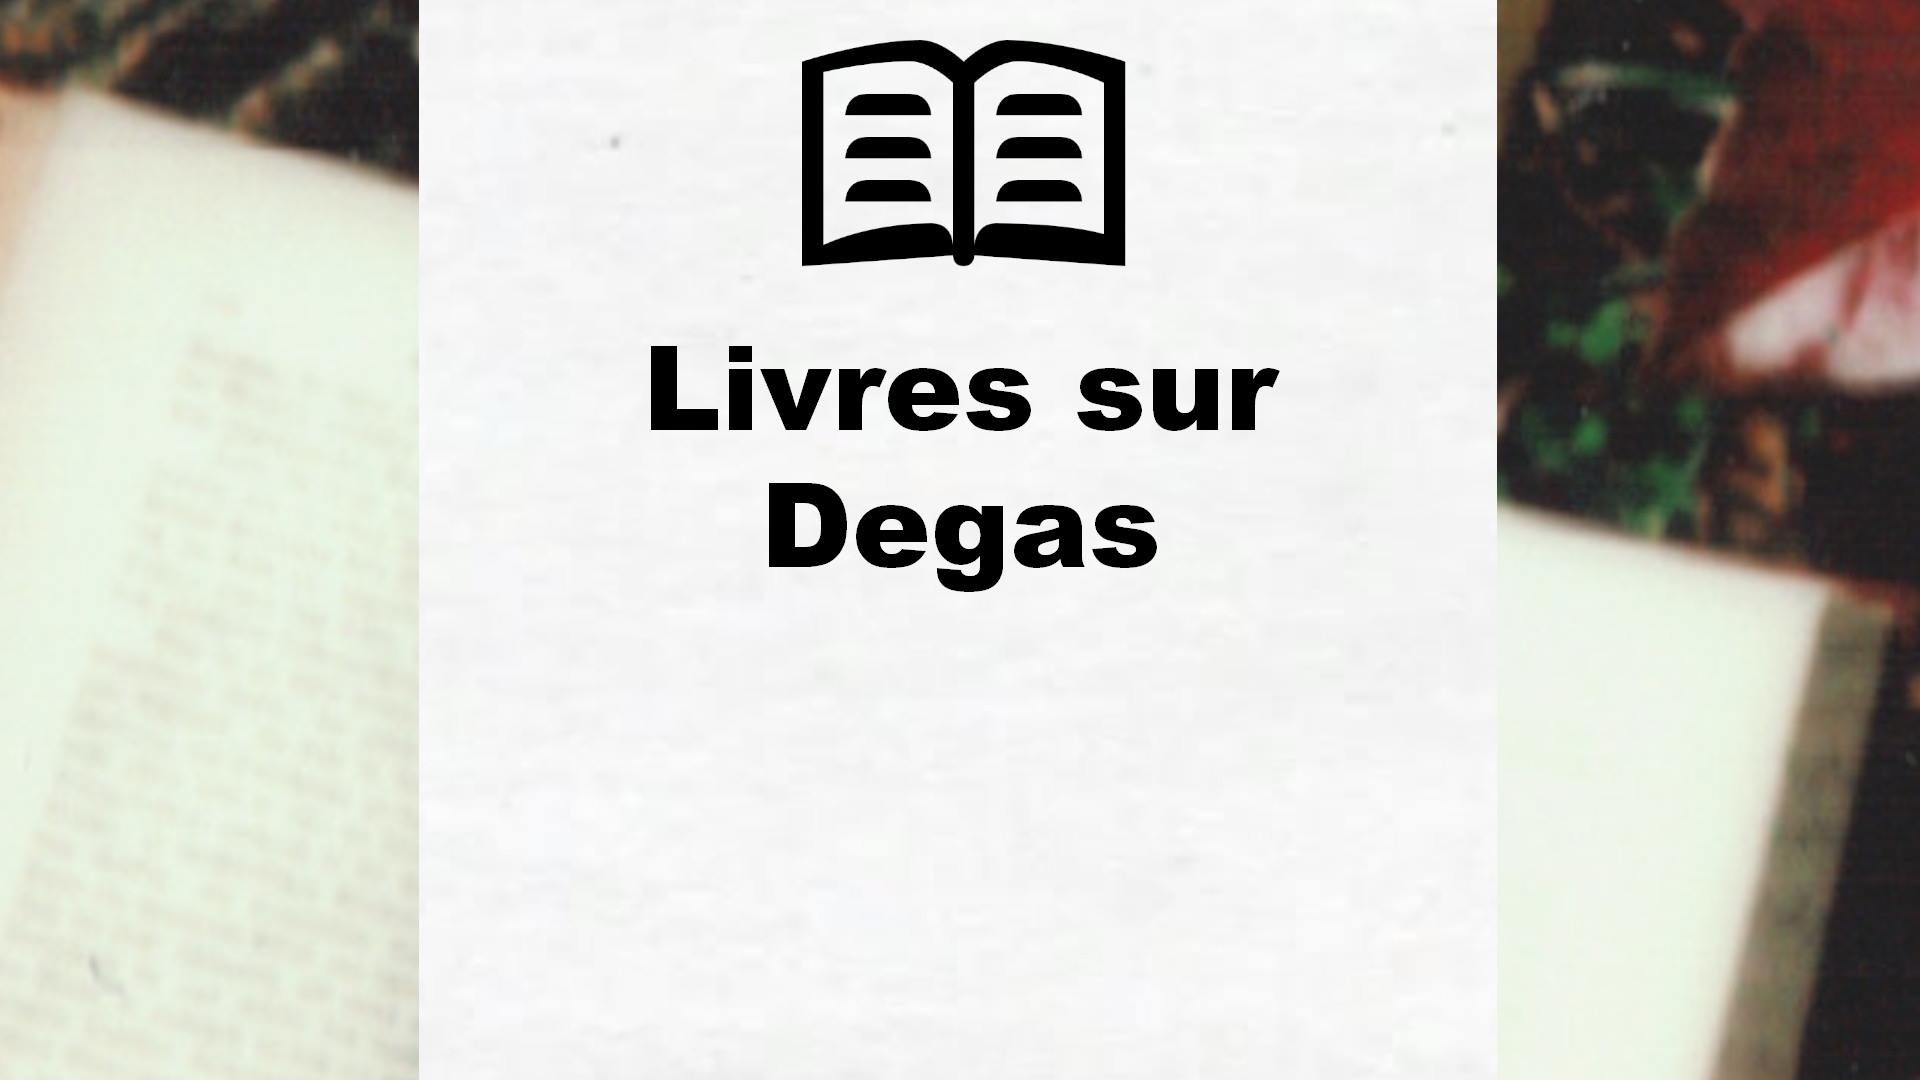 Livres sur Degas